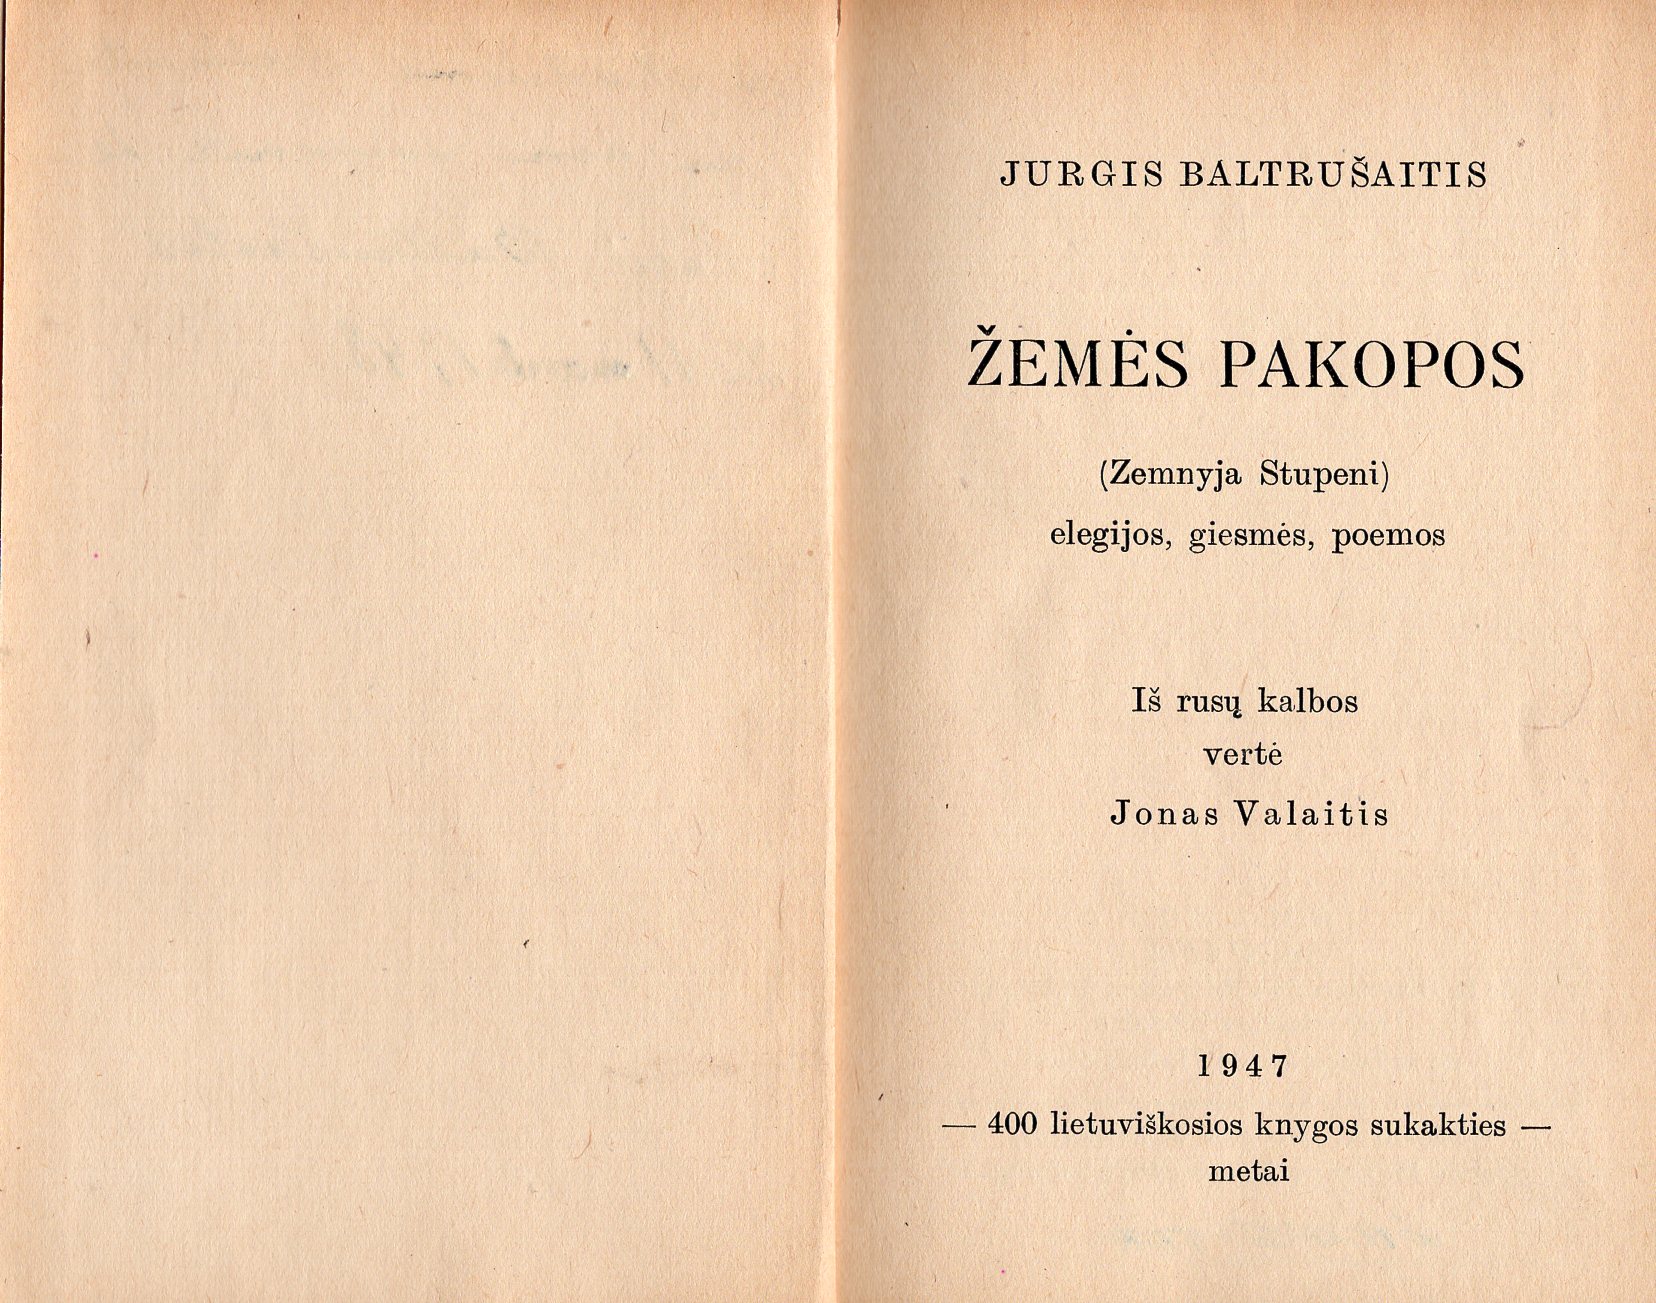 J. Baltrušaitis. Žemės pakopos. Iš rusų k. vertė Jonas Valaitis. Tiubingenas, 1947 m. MLLM 61066